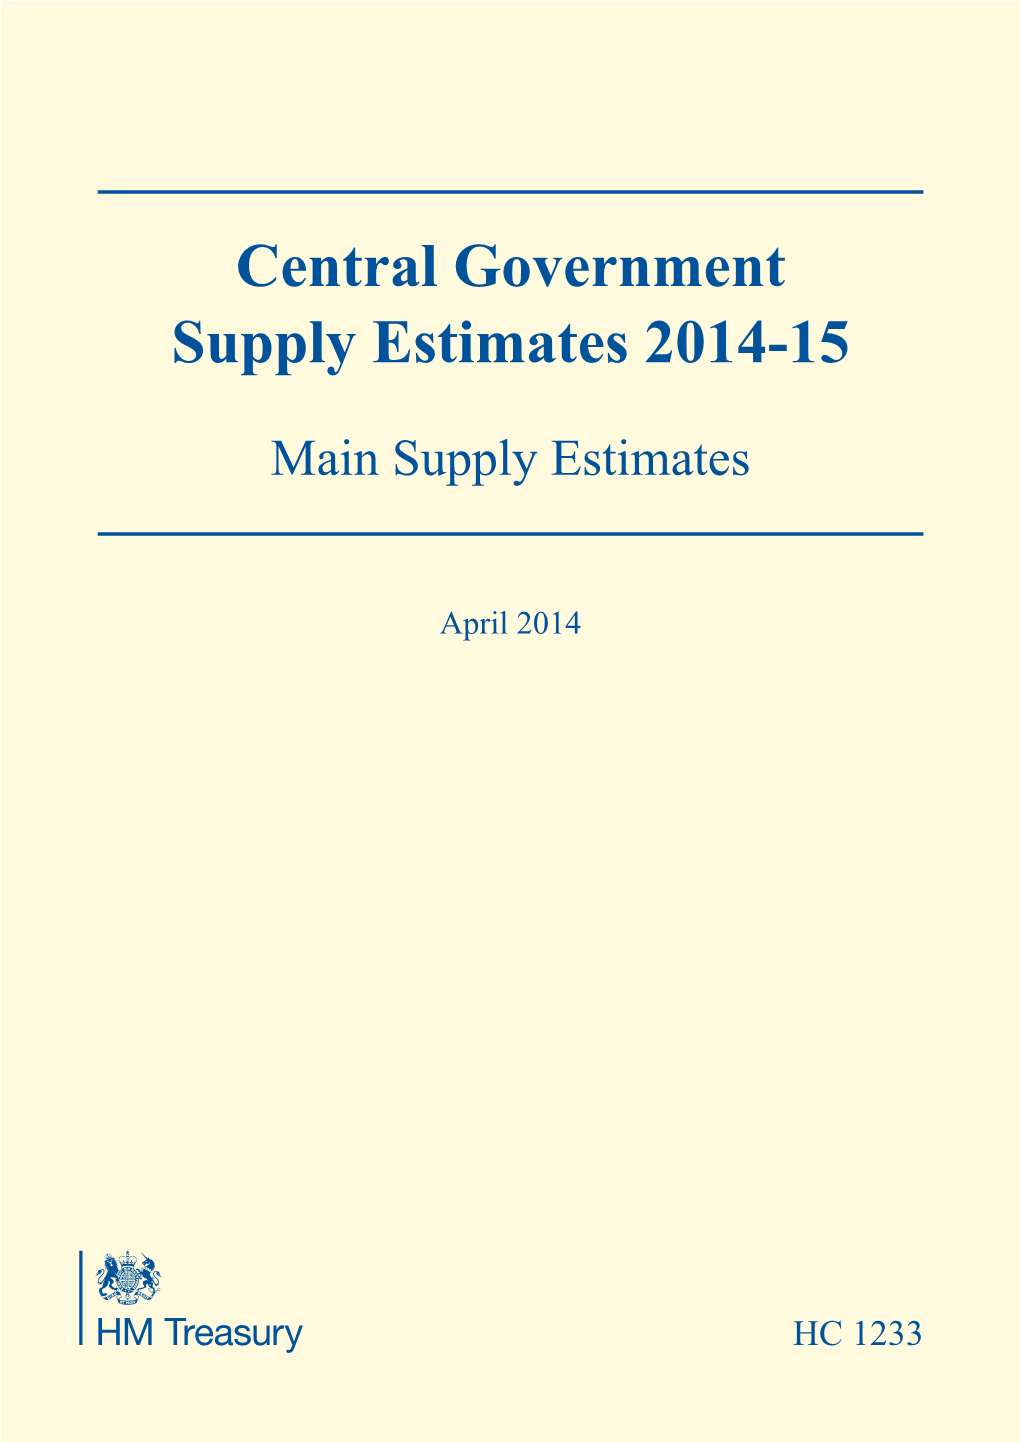 Supply Estimates 2014-15